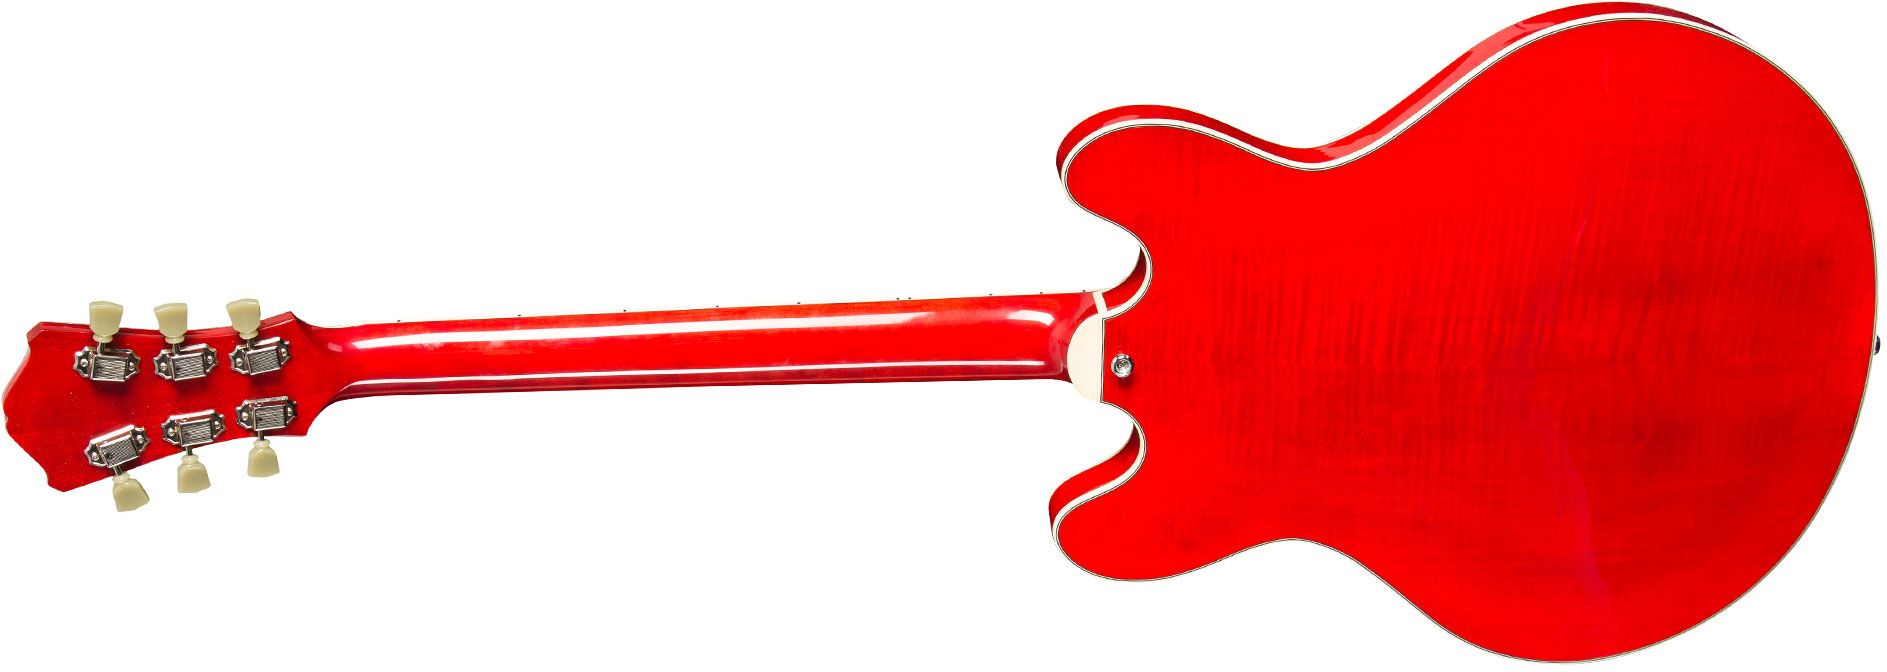 Eastman T486 Thinline Laminate Tout Erable Hh Seymour Duncan Ht Eb - Red - Guitare Électrique 1/2 Caisse - Variation 1